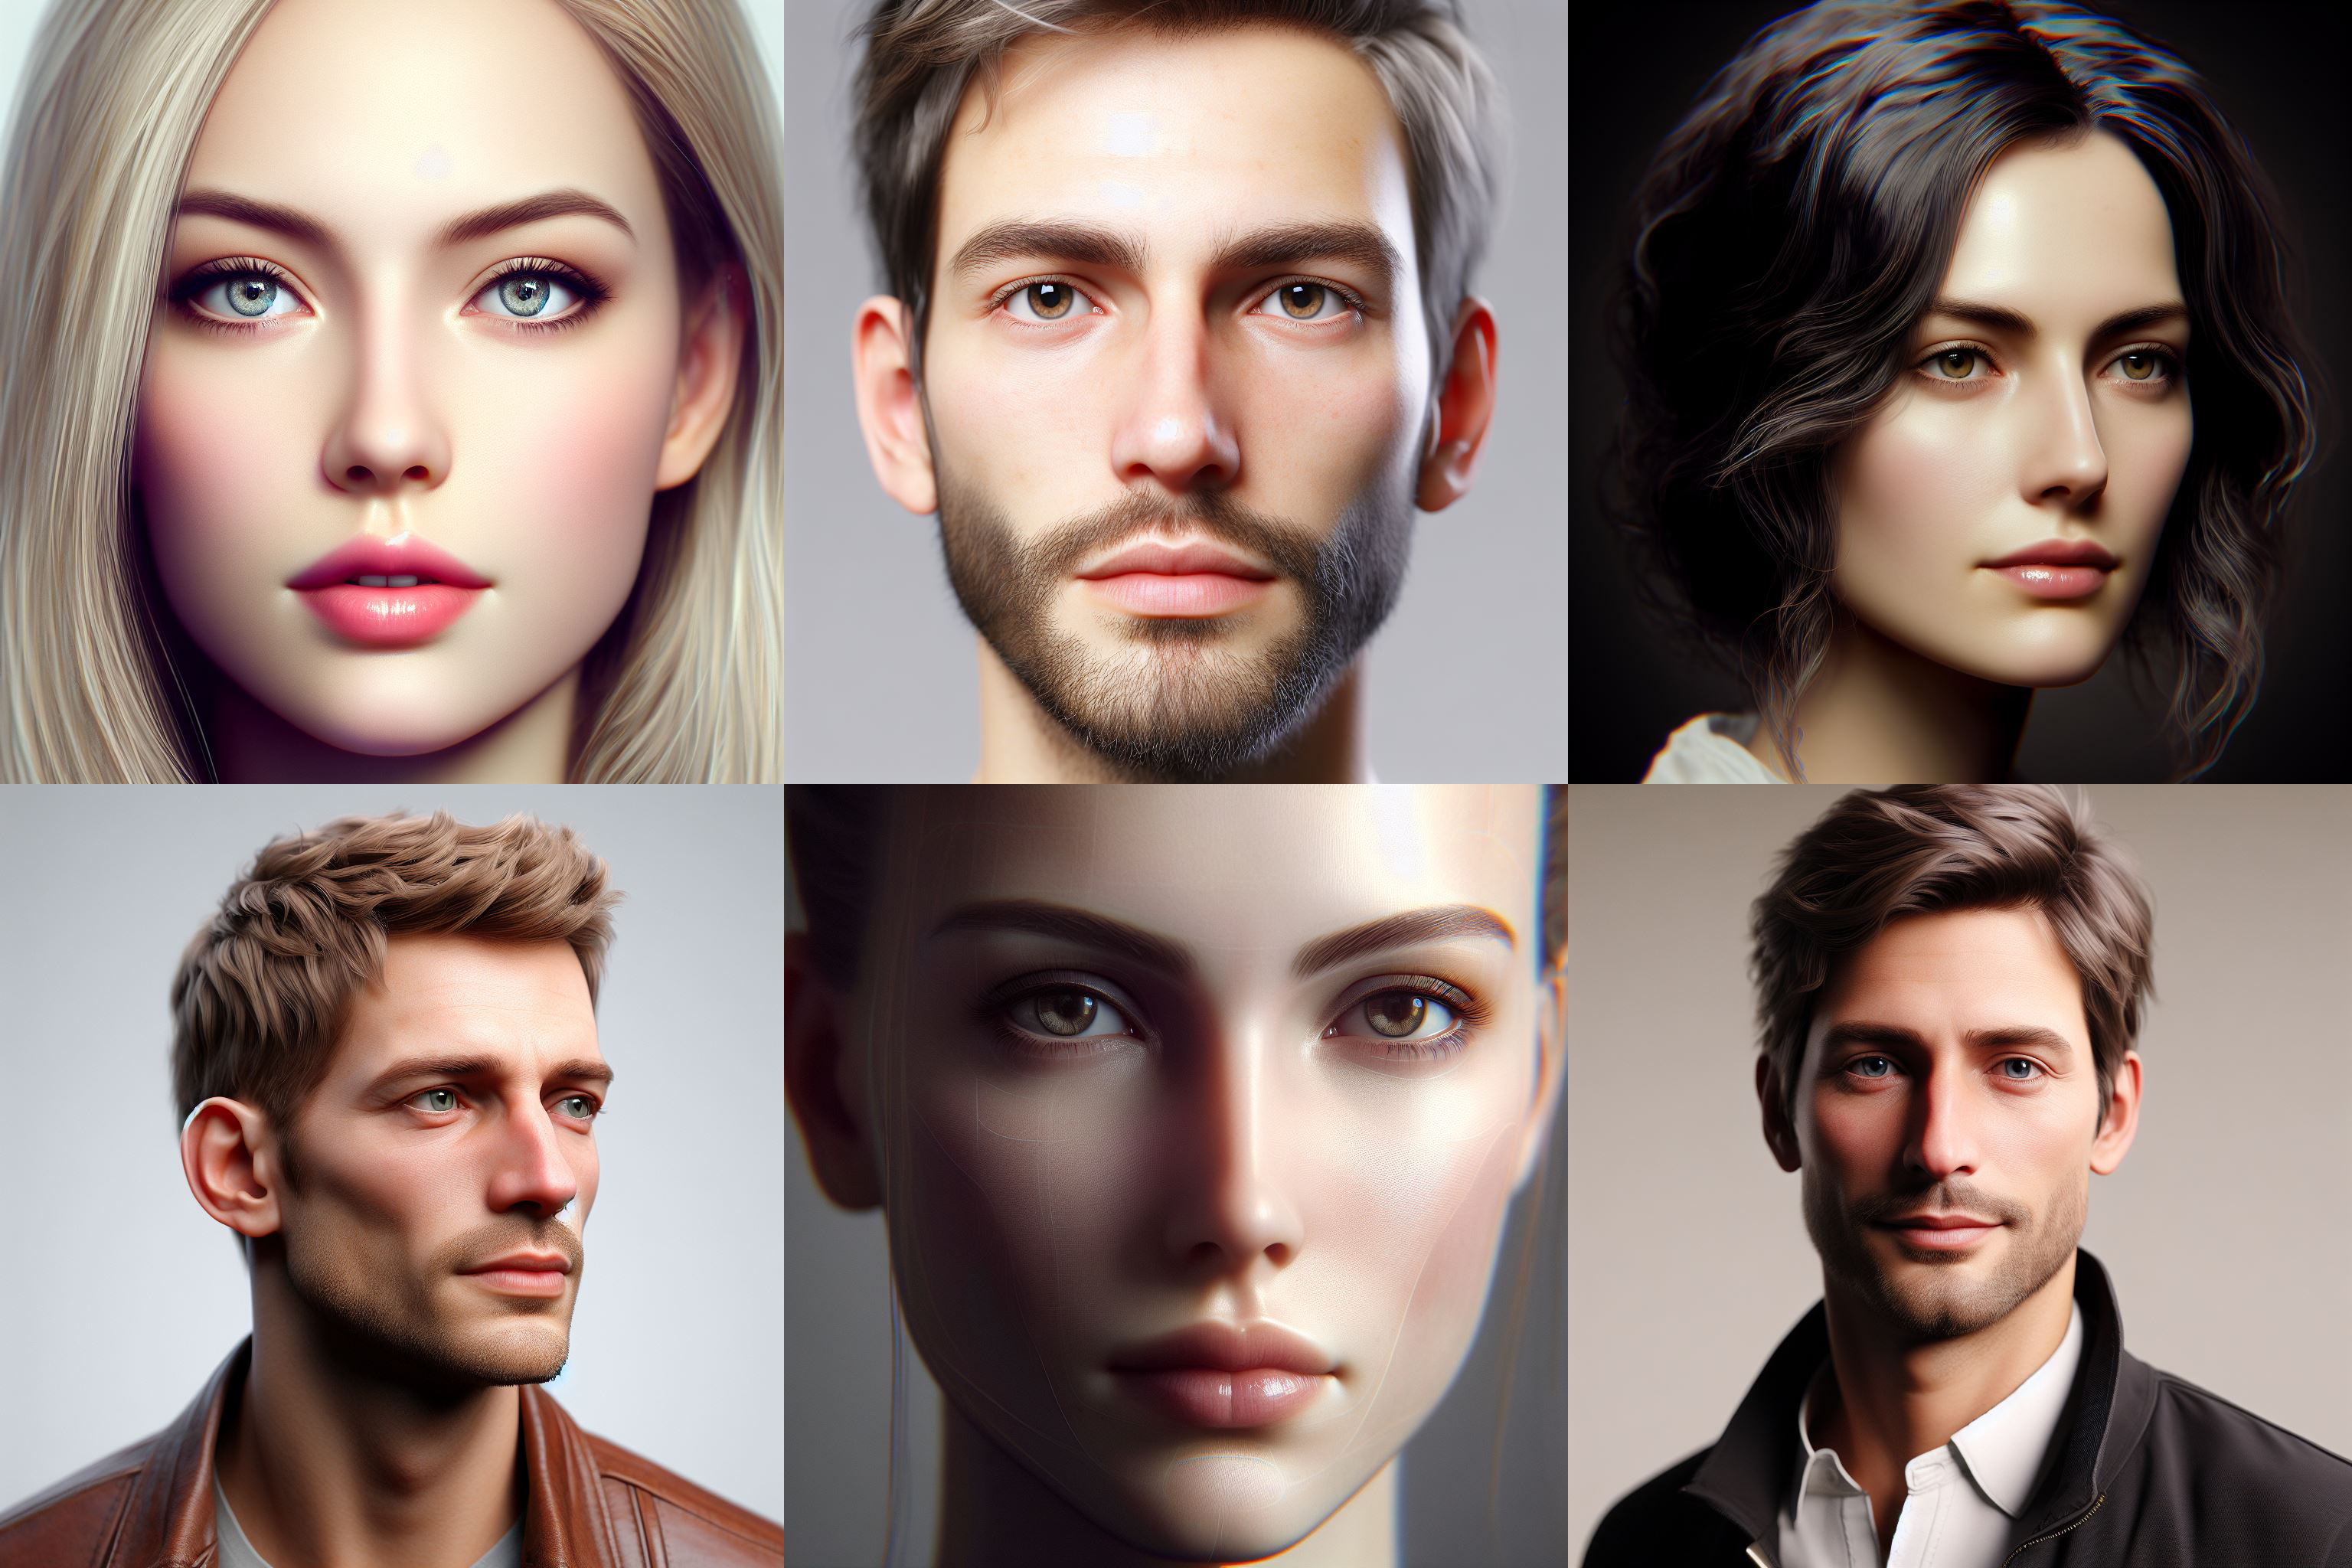 Люди частіше довіряють білим обличчям на згенерованих фотографіях, ніж на реальних знімках - дослідження